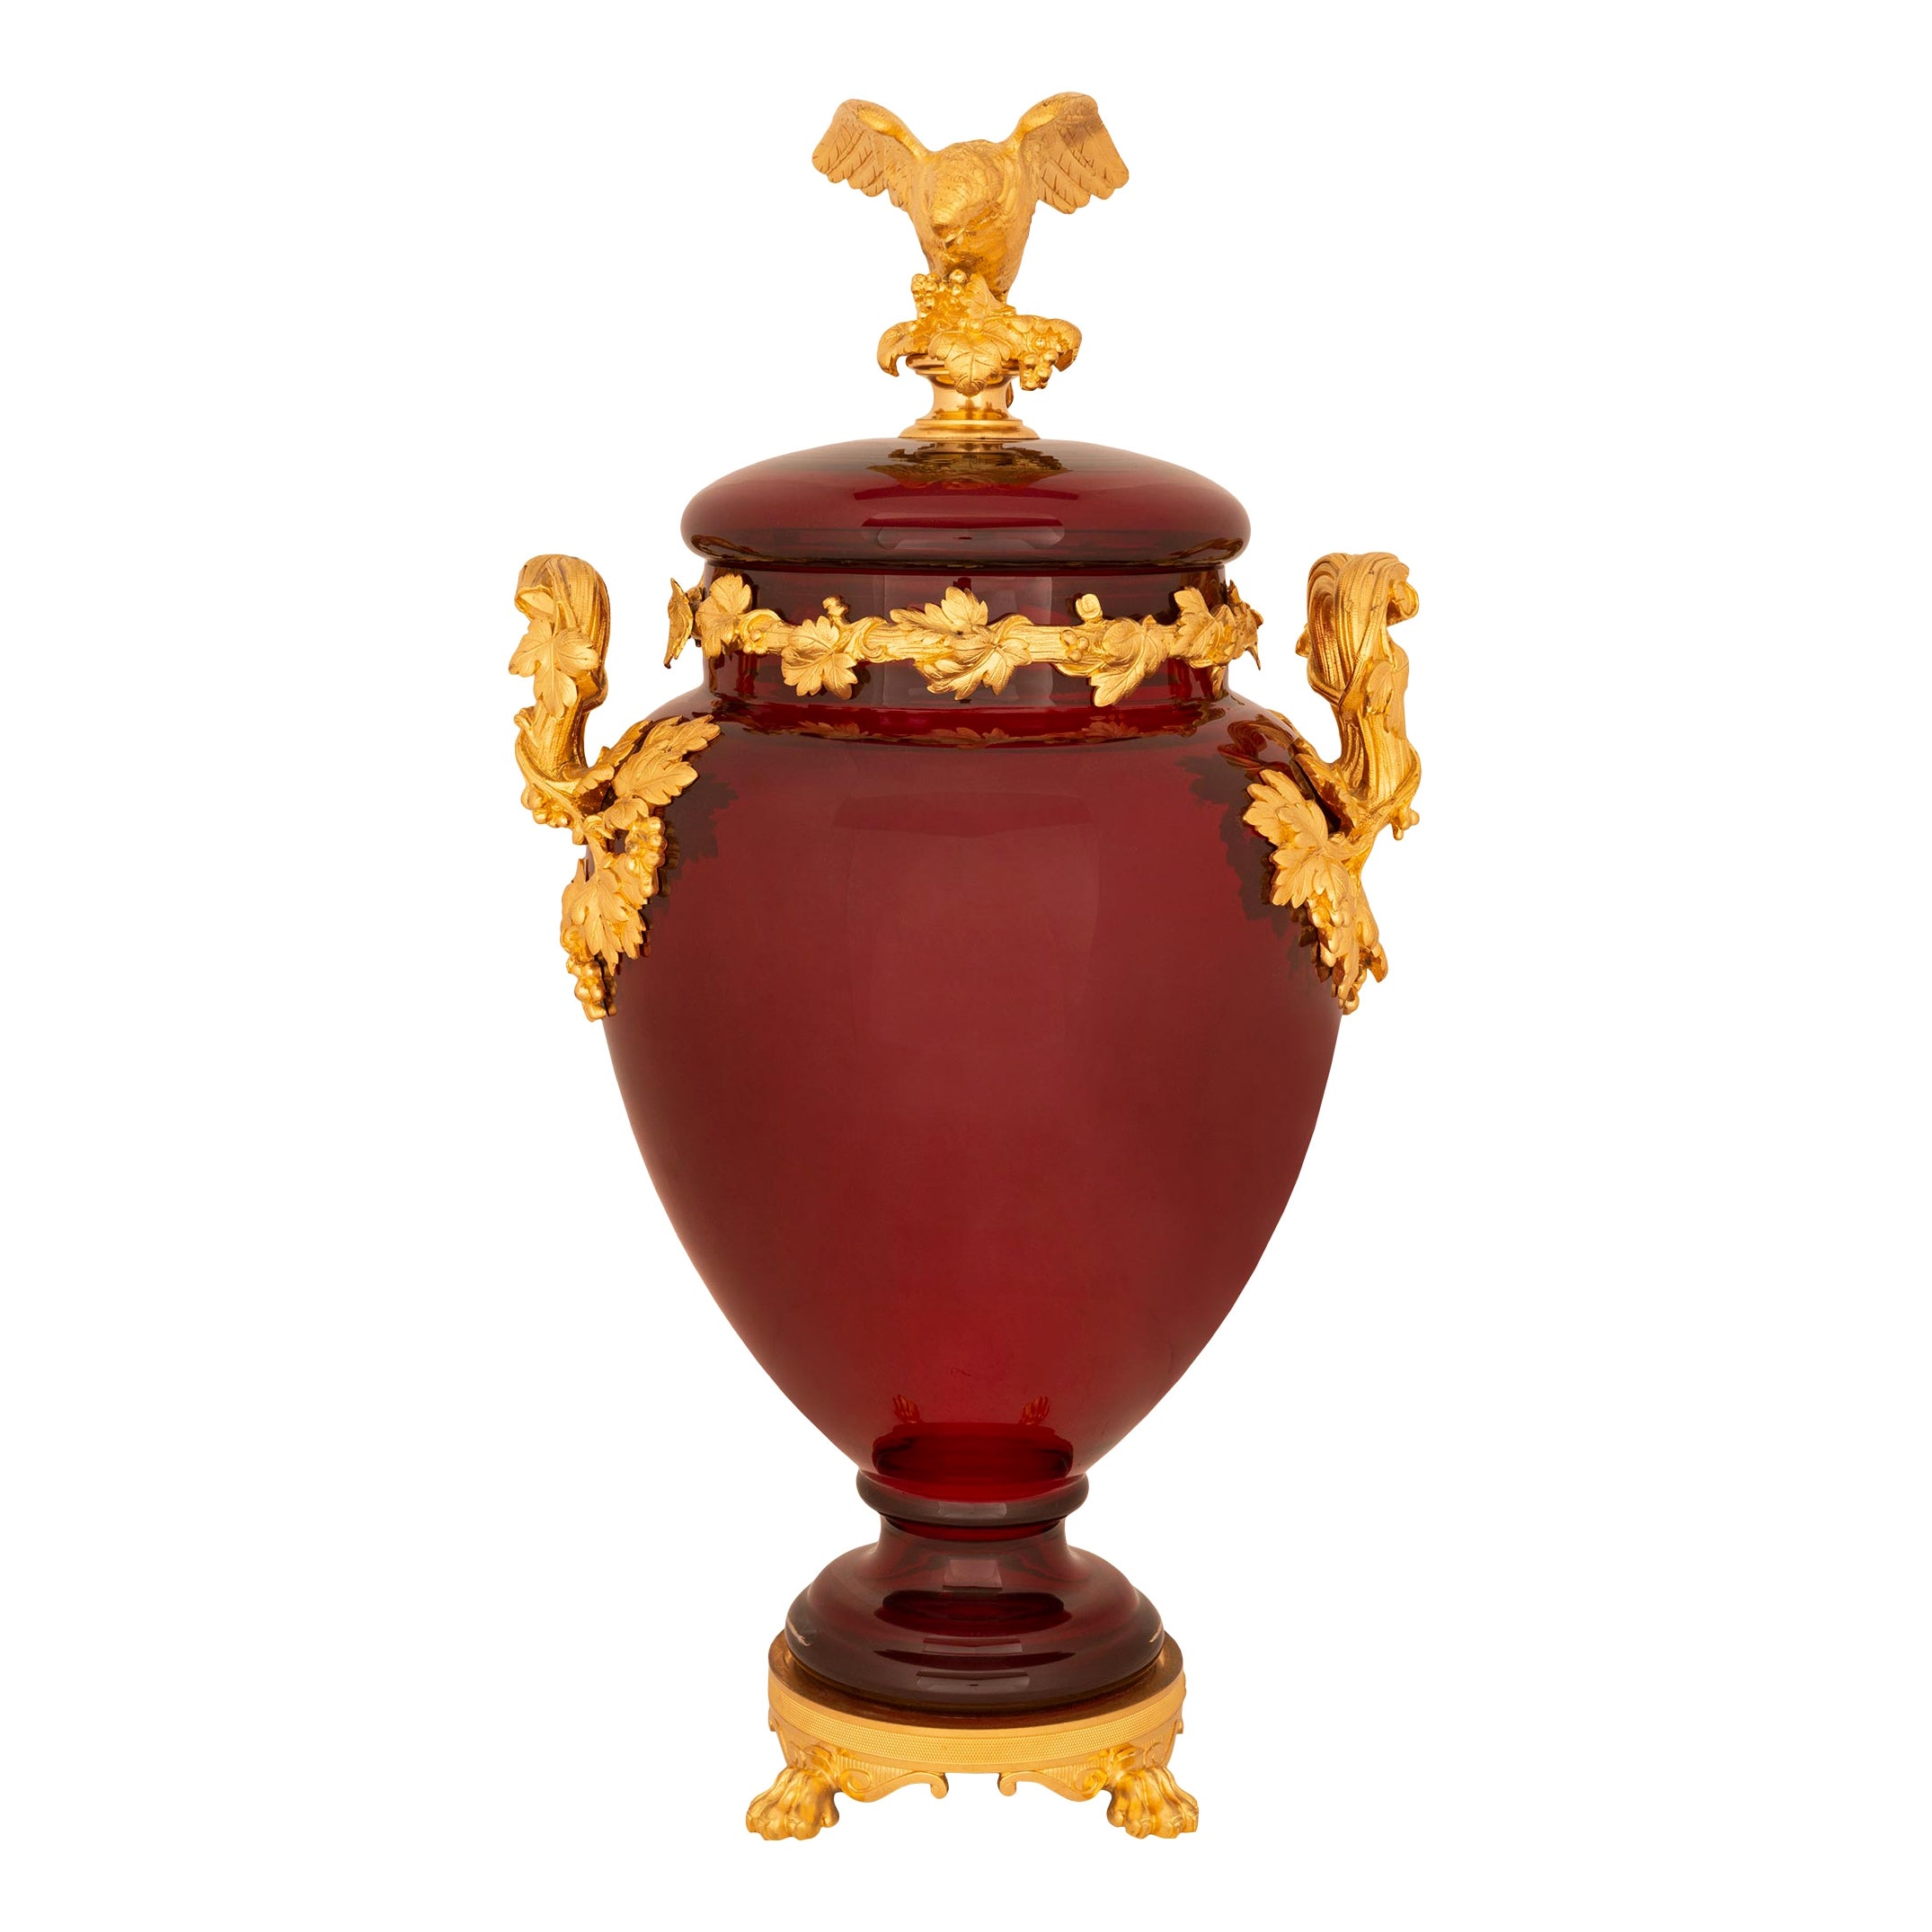 Urne néoclassique française du 19ème siècle en verre rouge sang de bœuf avec couvercle en bronze doré